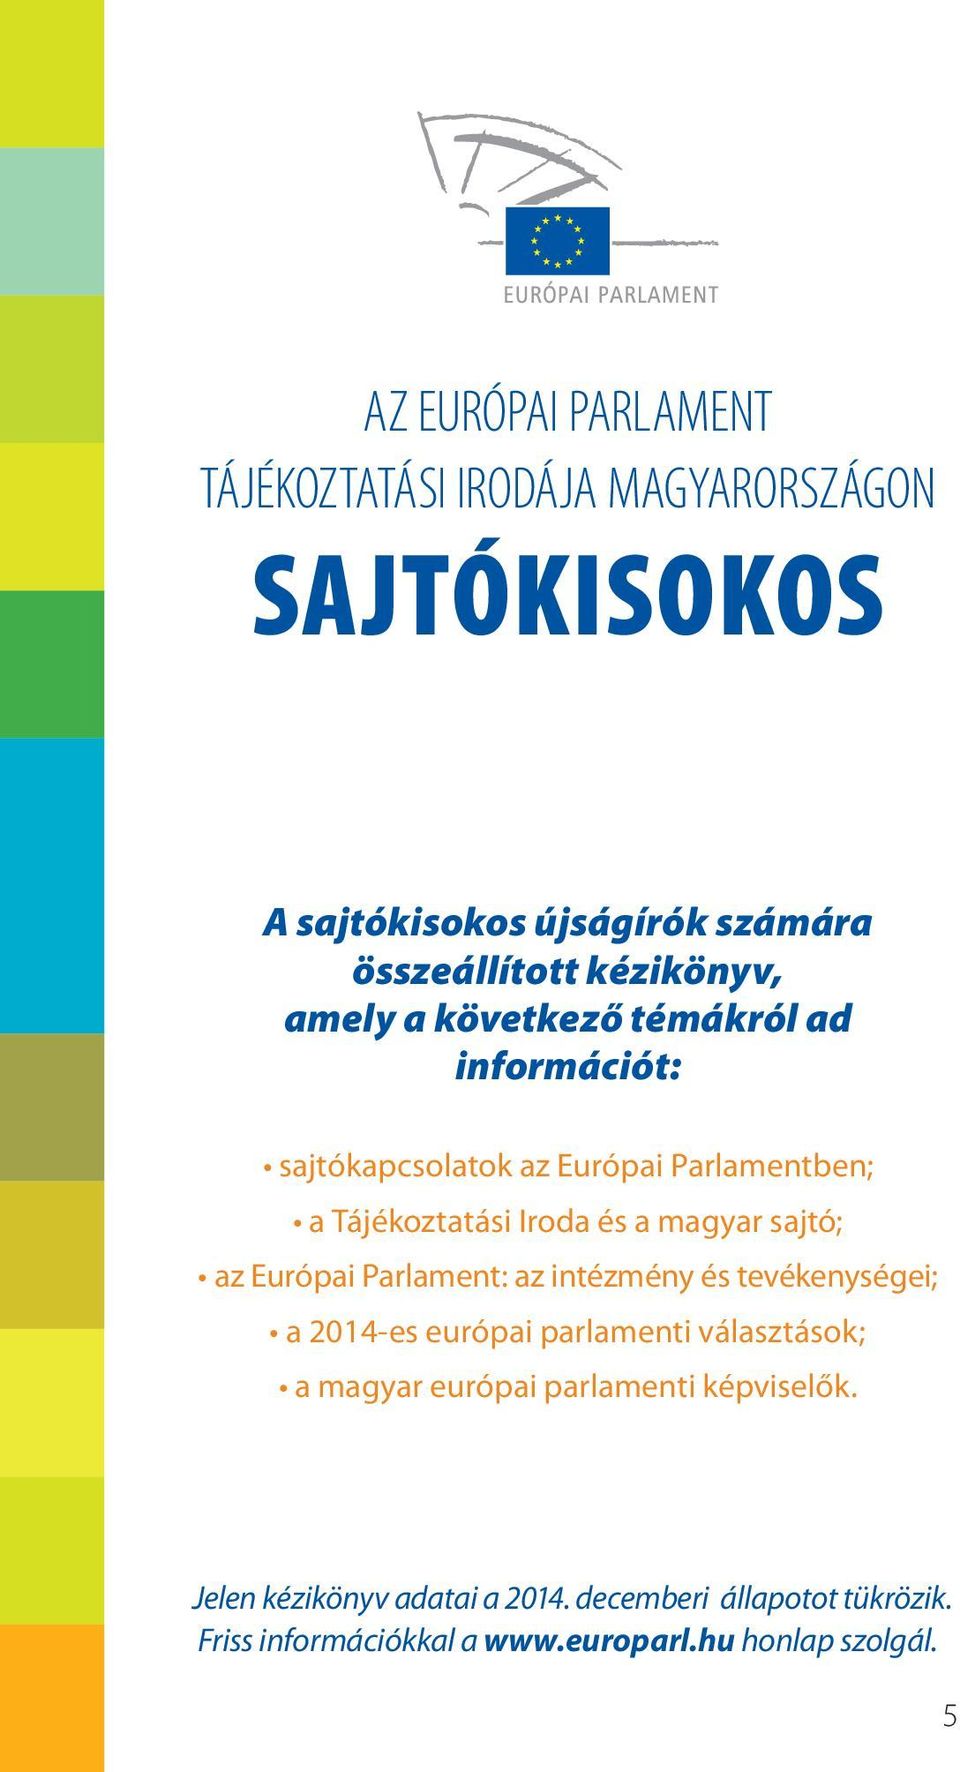 magyar sajtó; az Európai Parlament: az intézmény és tevékenységei; a 2014-es európai parlamenti választások; a magyar európai